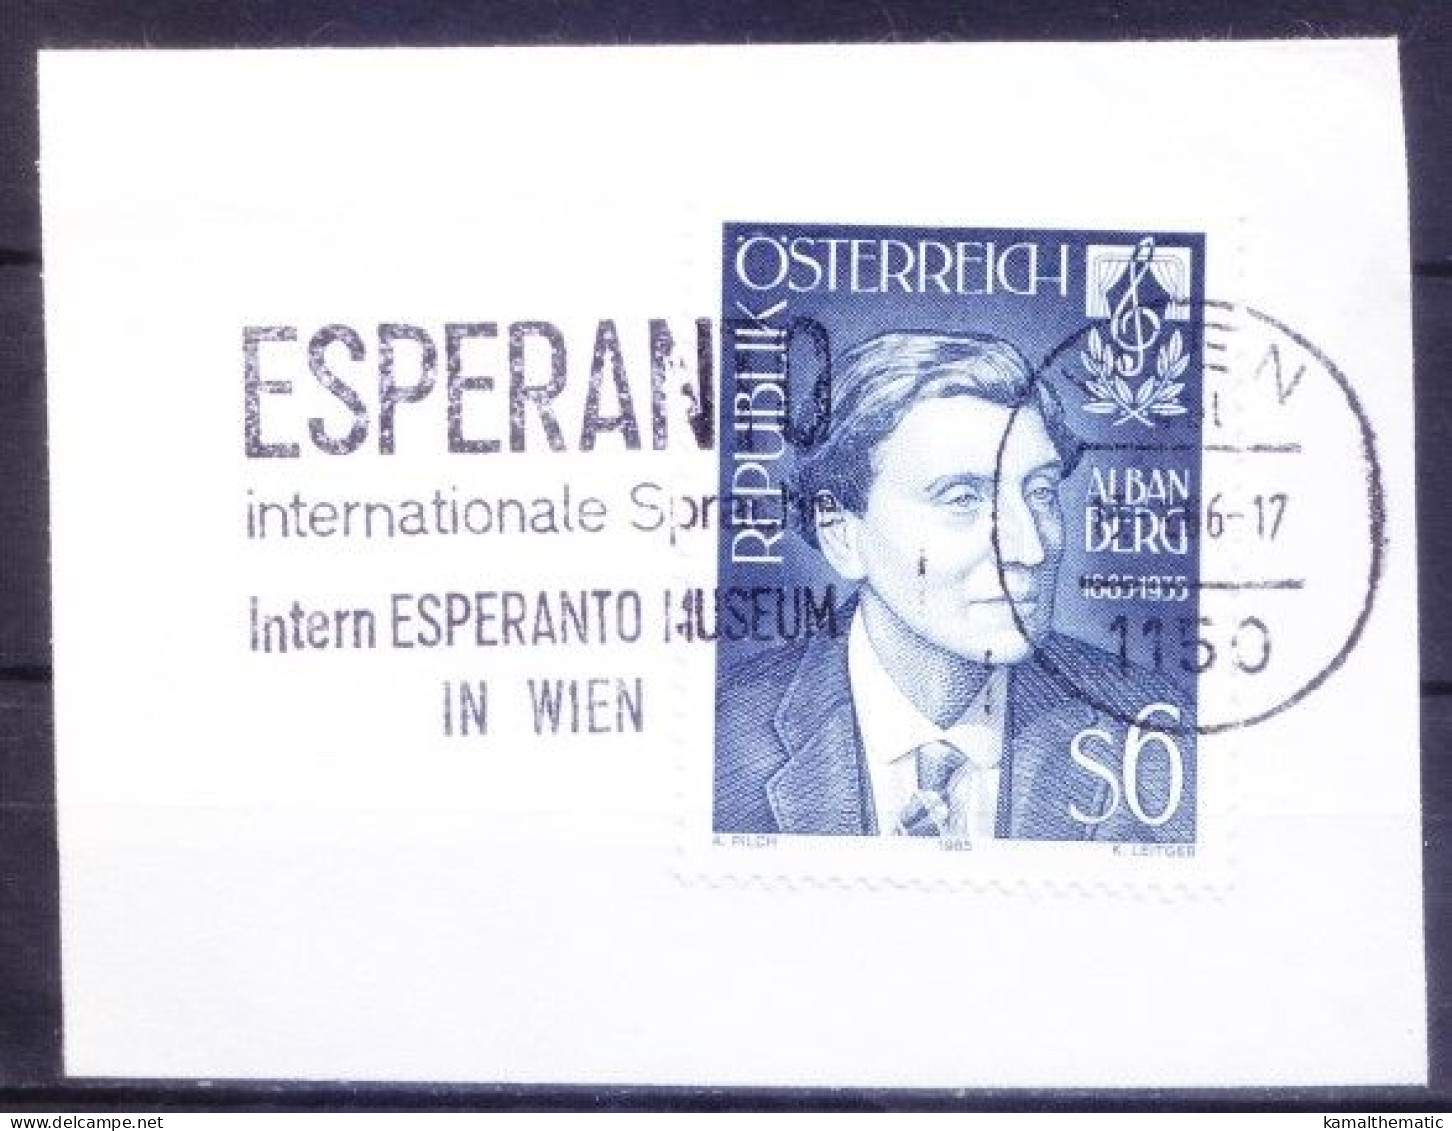 Slogan International Esperanto Museum In Vienna On Austria 1985 Alban Berg Stamp - Musées